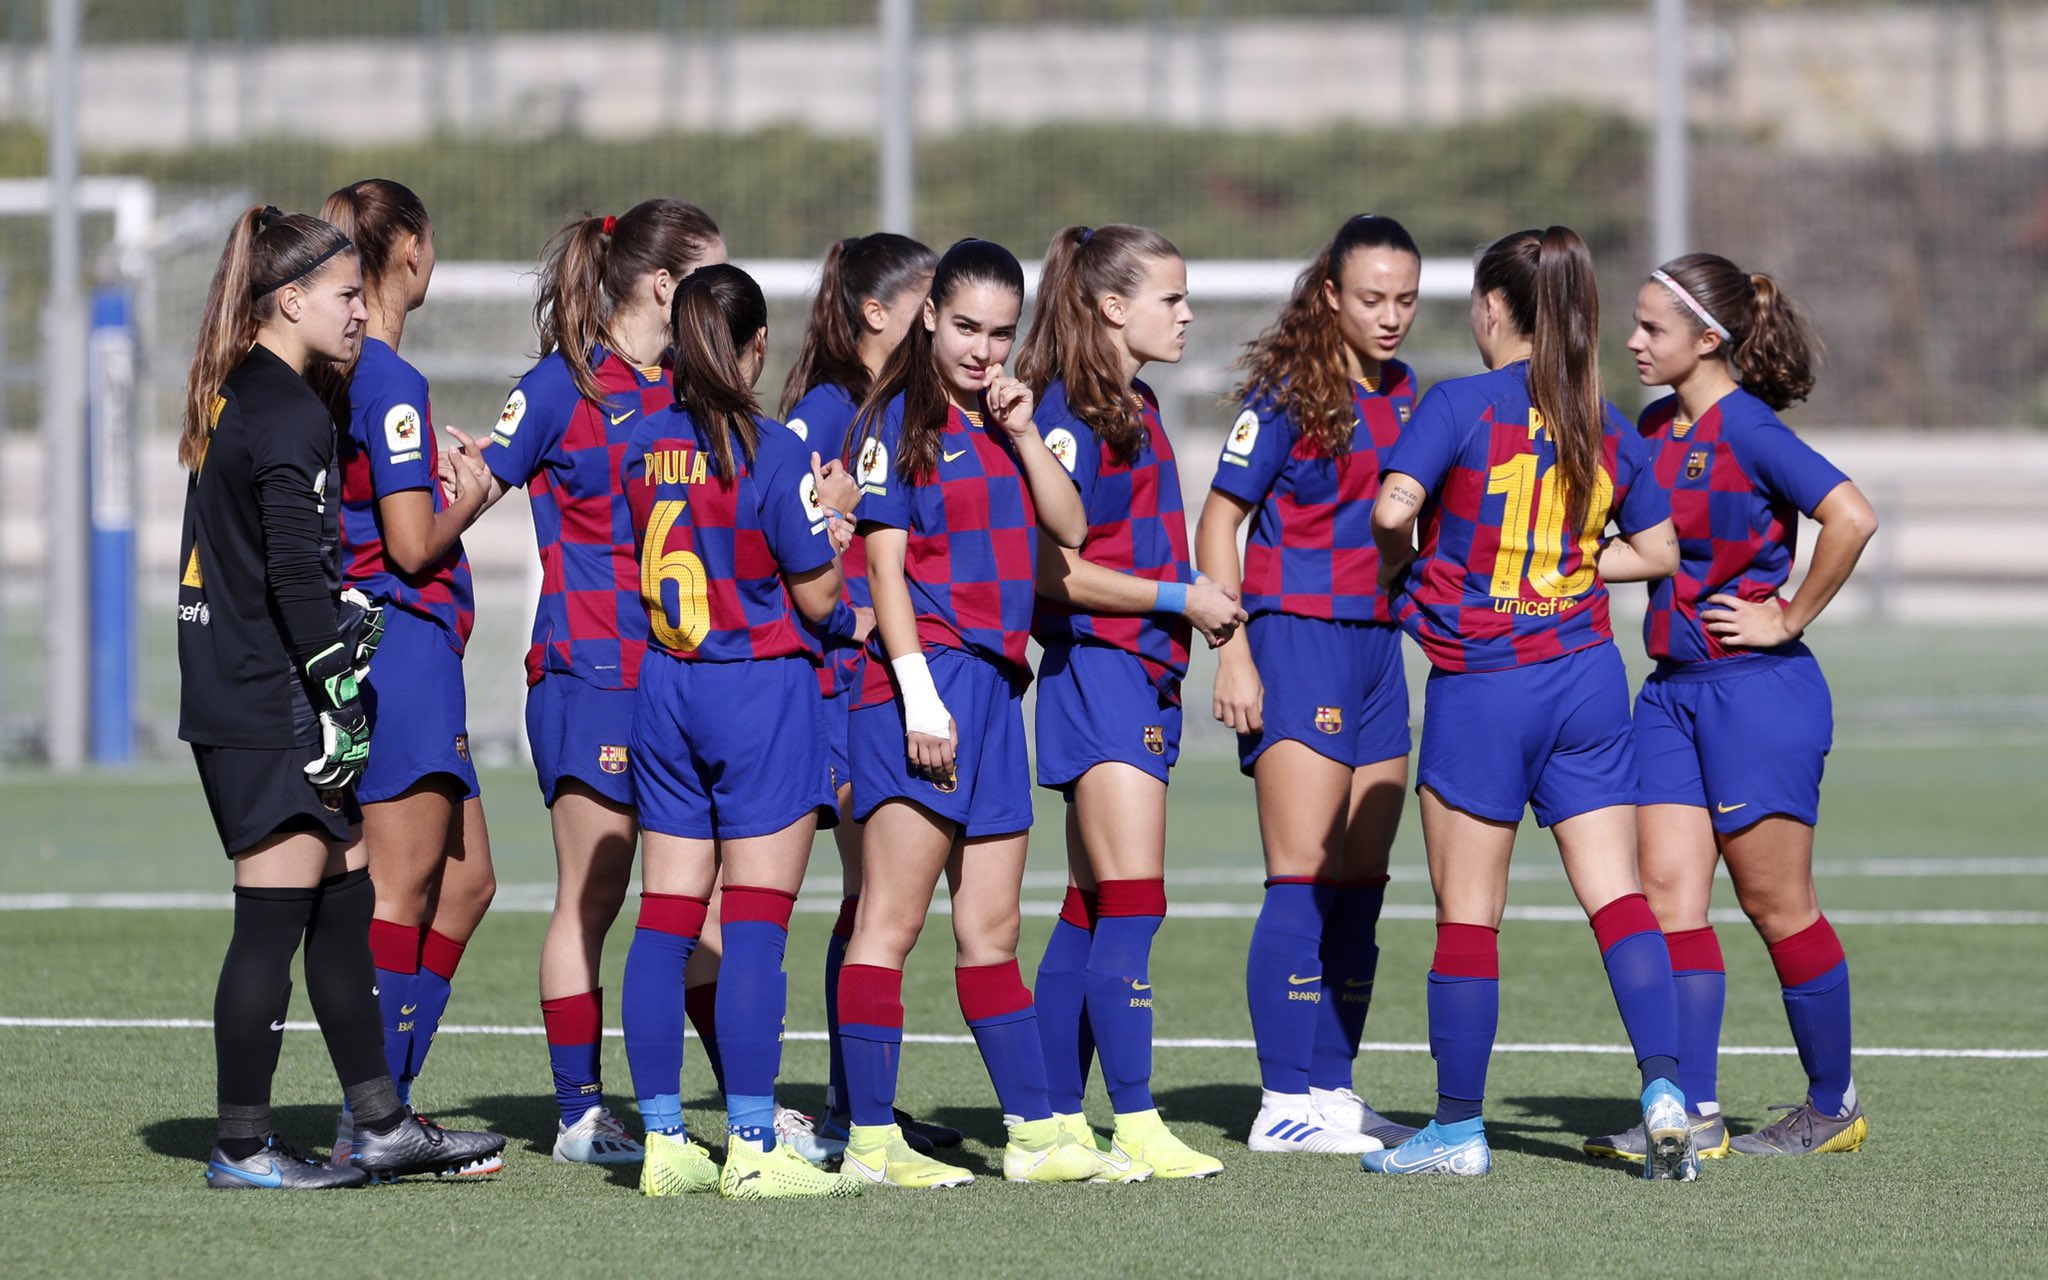 Posiciones de fútbol club barcelona femenino